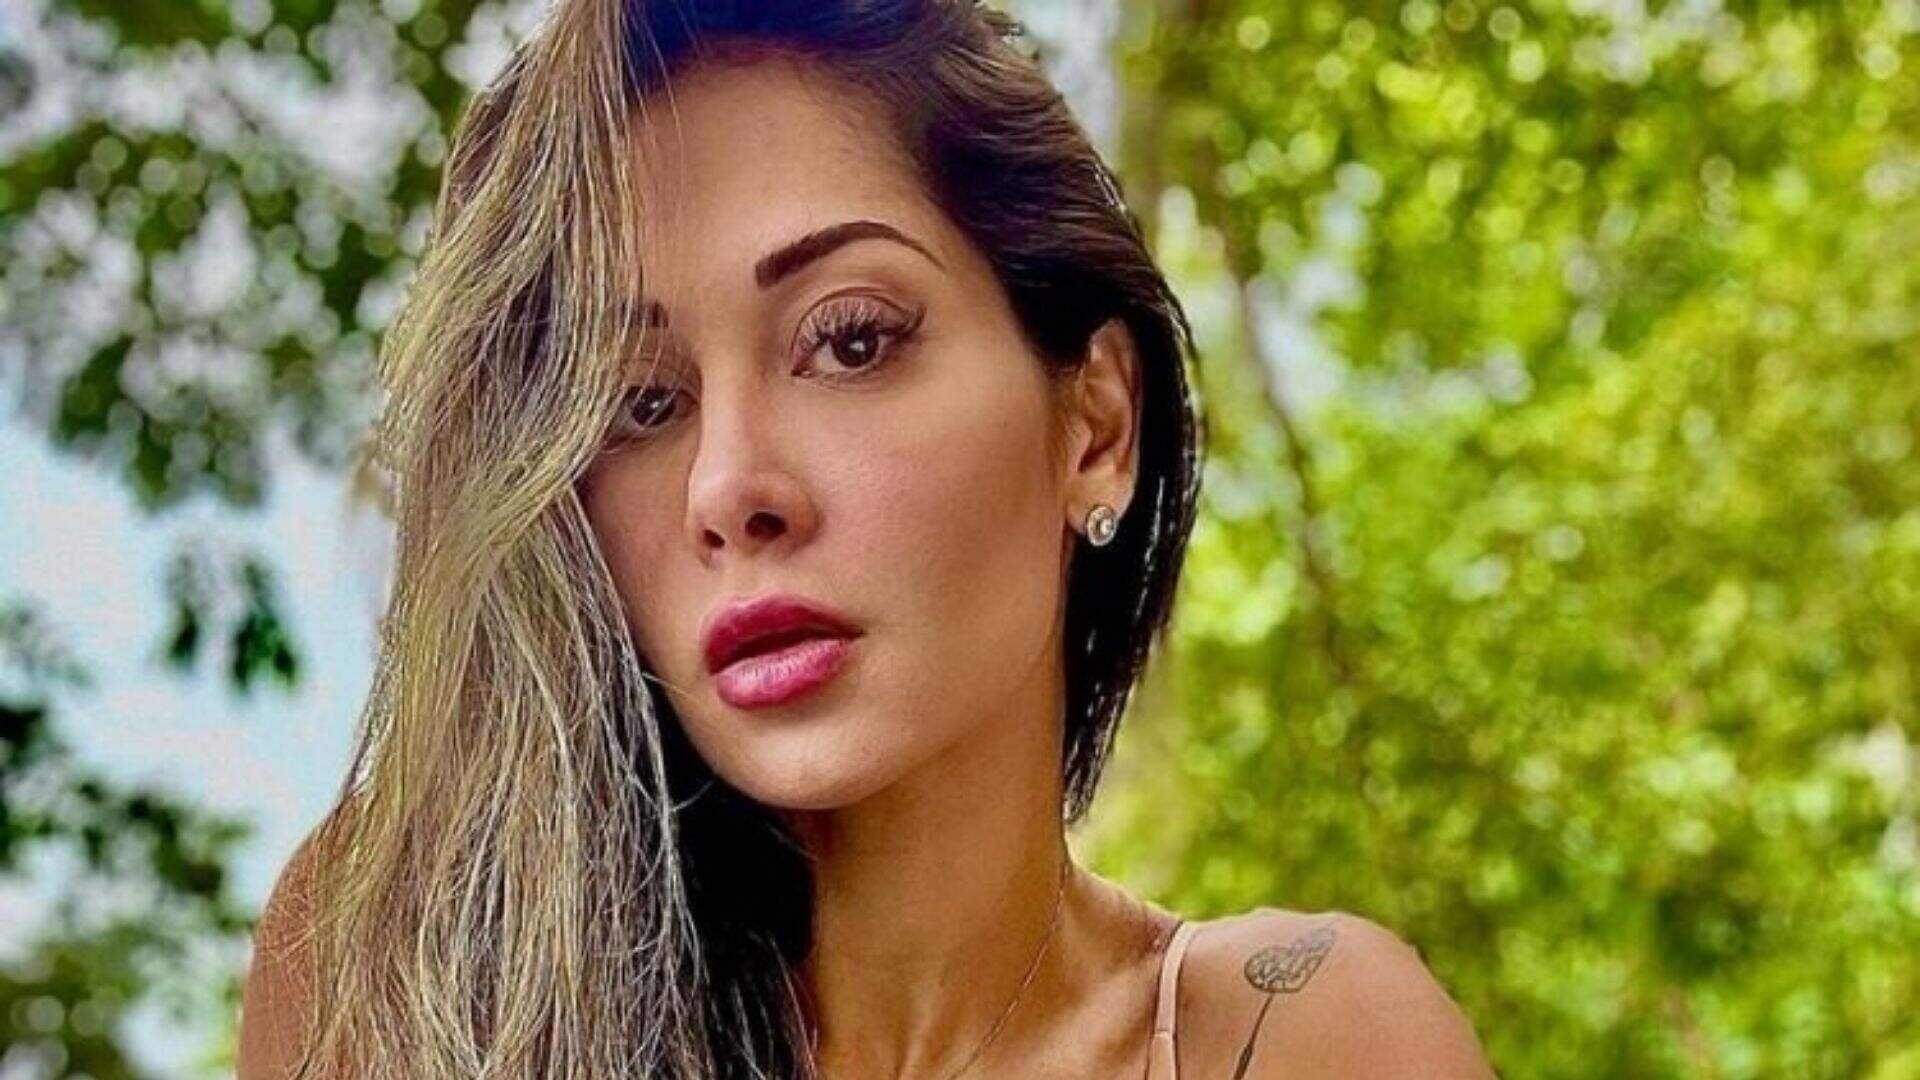 Empresária. Maíra Cardi participou da nona temporada do Big Brother Brasil, tonou-se coach de emacrecimento. Atualmente está casada com Arthur Aguiar.